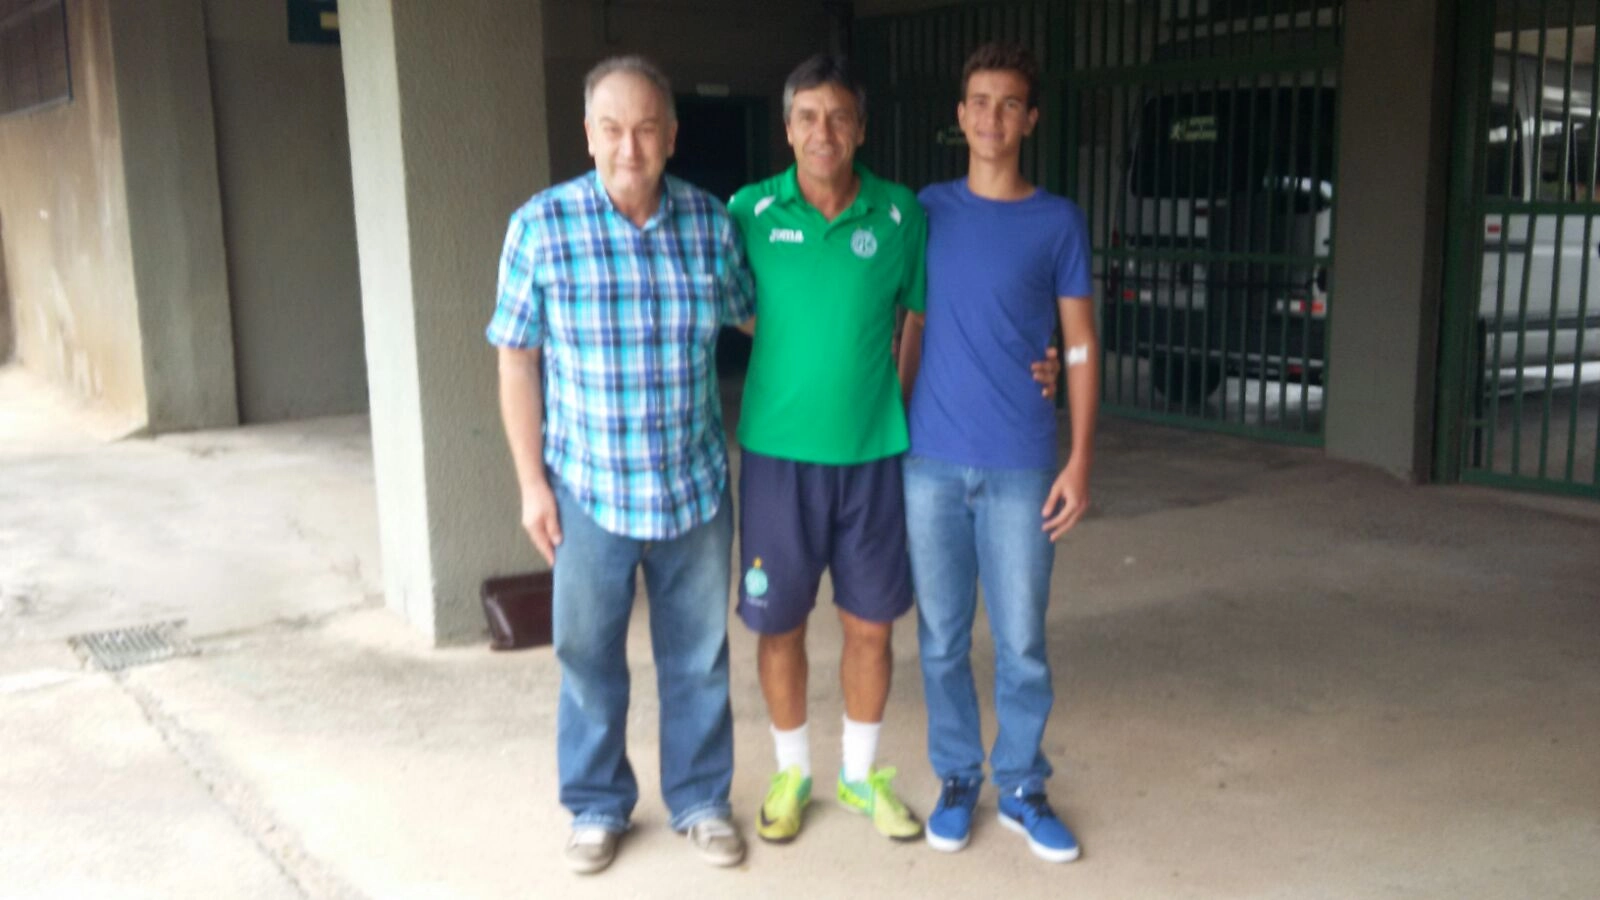 Edvaldo Tietz, Renato Pé Murcho e Nilson Ronaldo Tietz Jr. (sobrinho de Edvaldo, zagueiro sub-14 do Rio Branco de Americana), no estádio Brinco de Ouro da Princesa, em Campinas-SP, em 21 de novembro de 2015